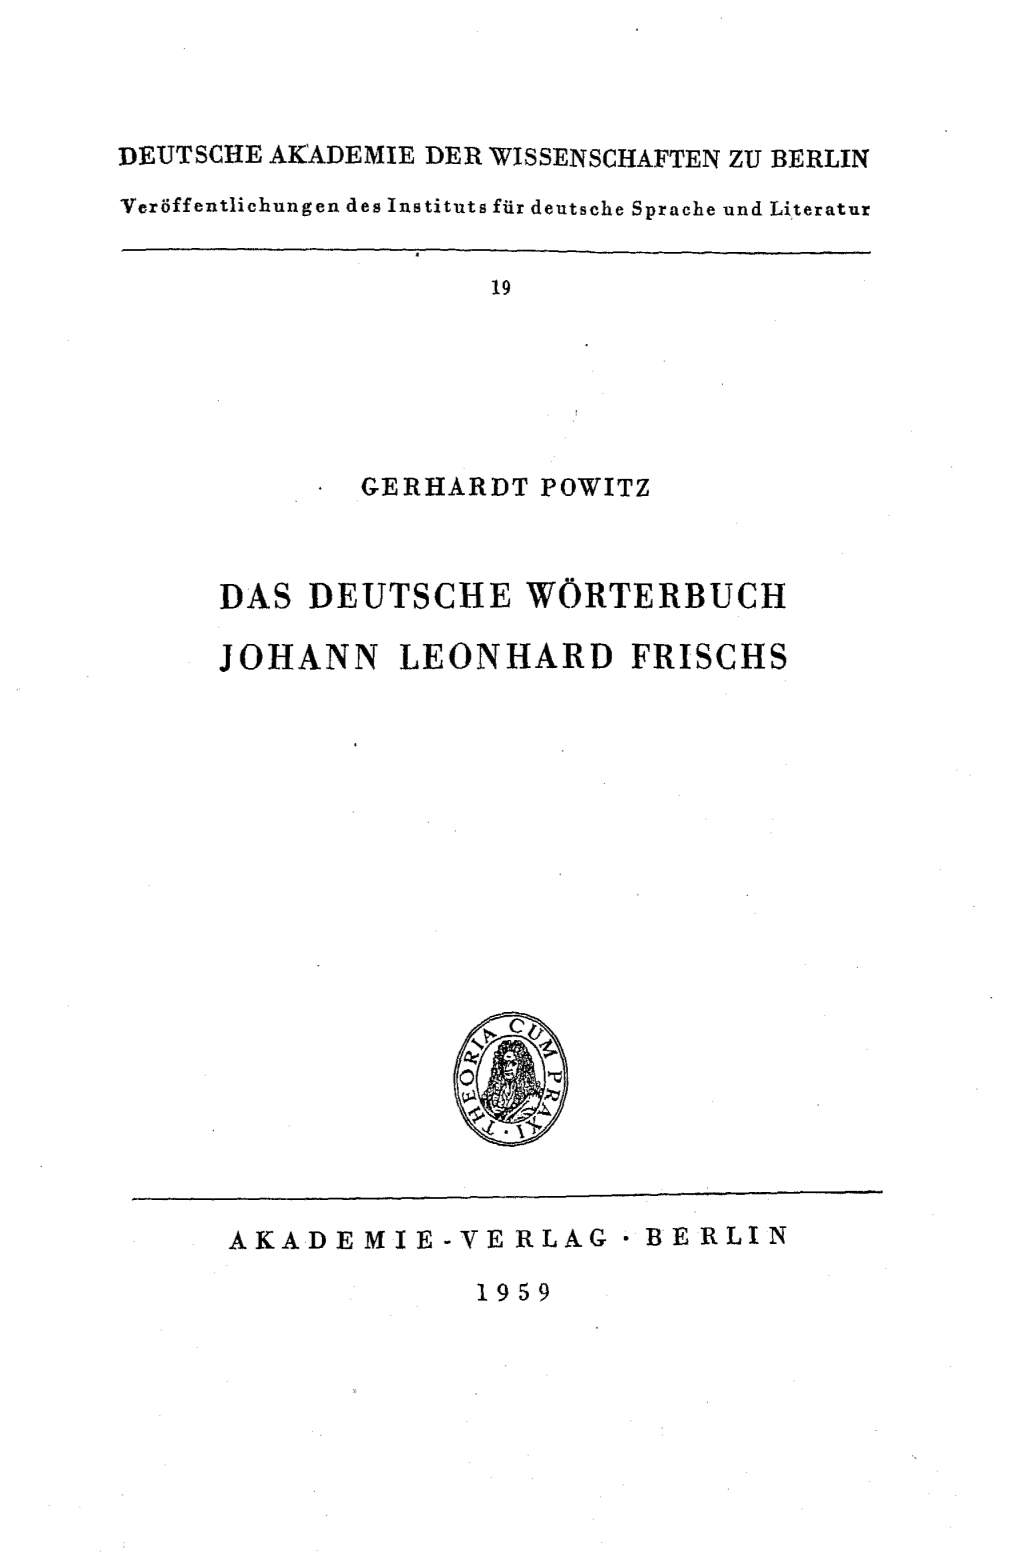 Das Deutsche Wörterbuch Johann Leonhard Frischs